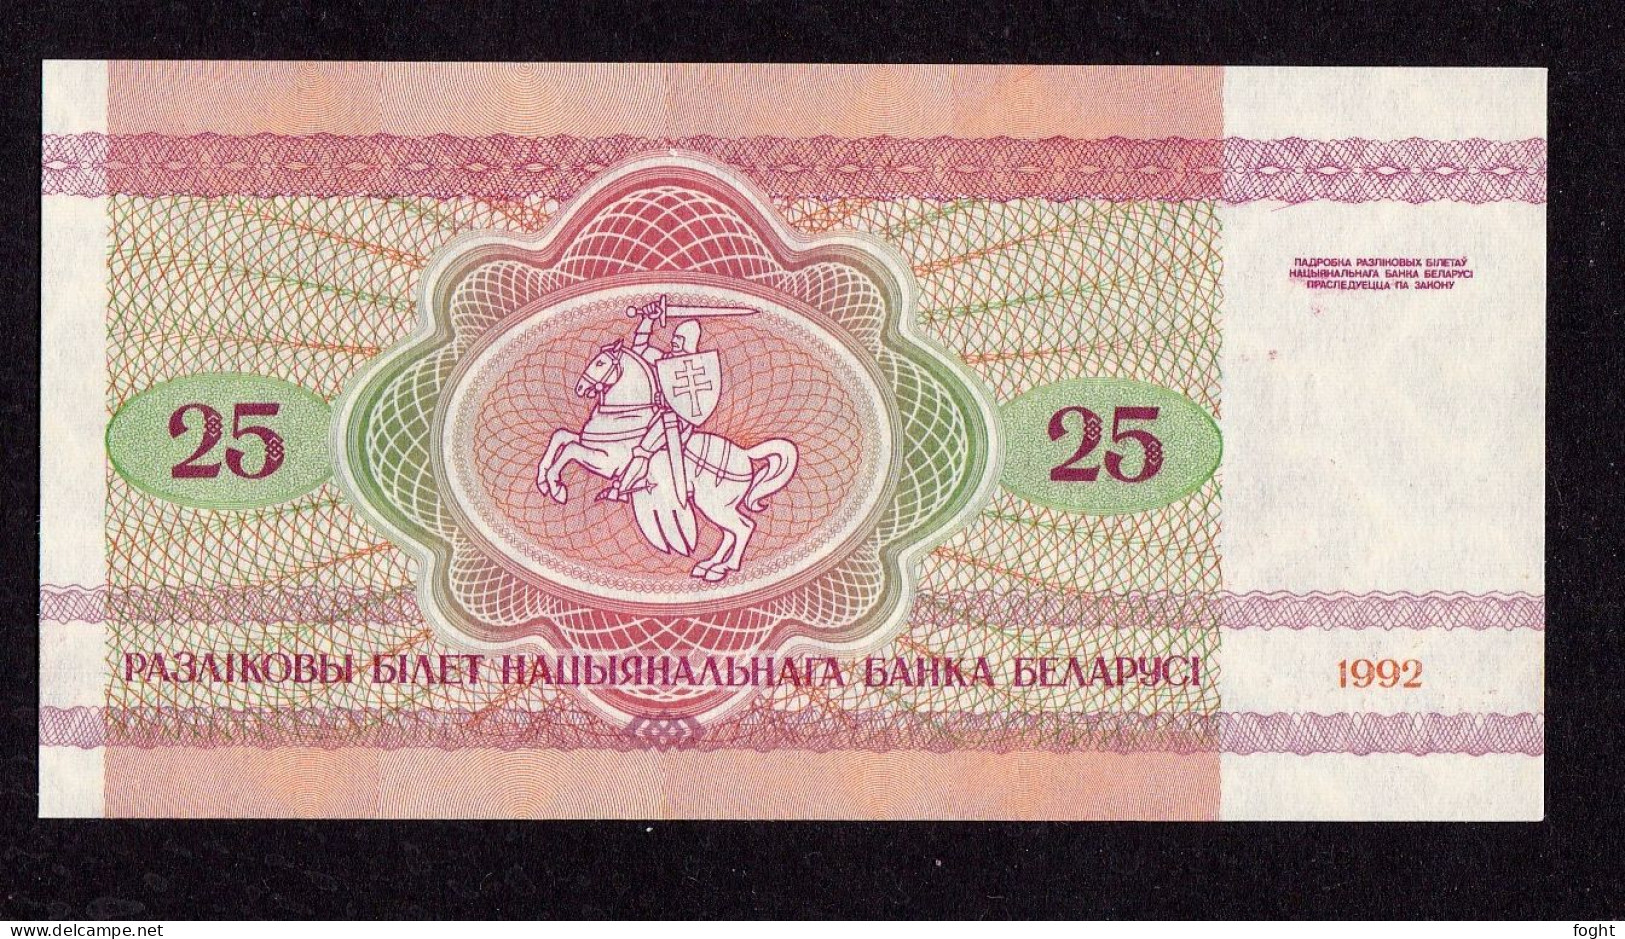 1992 АO Belarus Belarus National Bank Banknote 25 Rublei,P#6 - Wit-Rusland